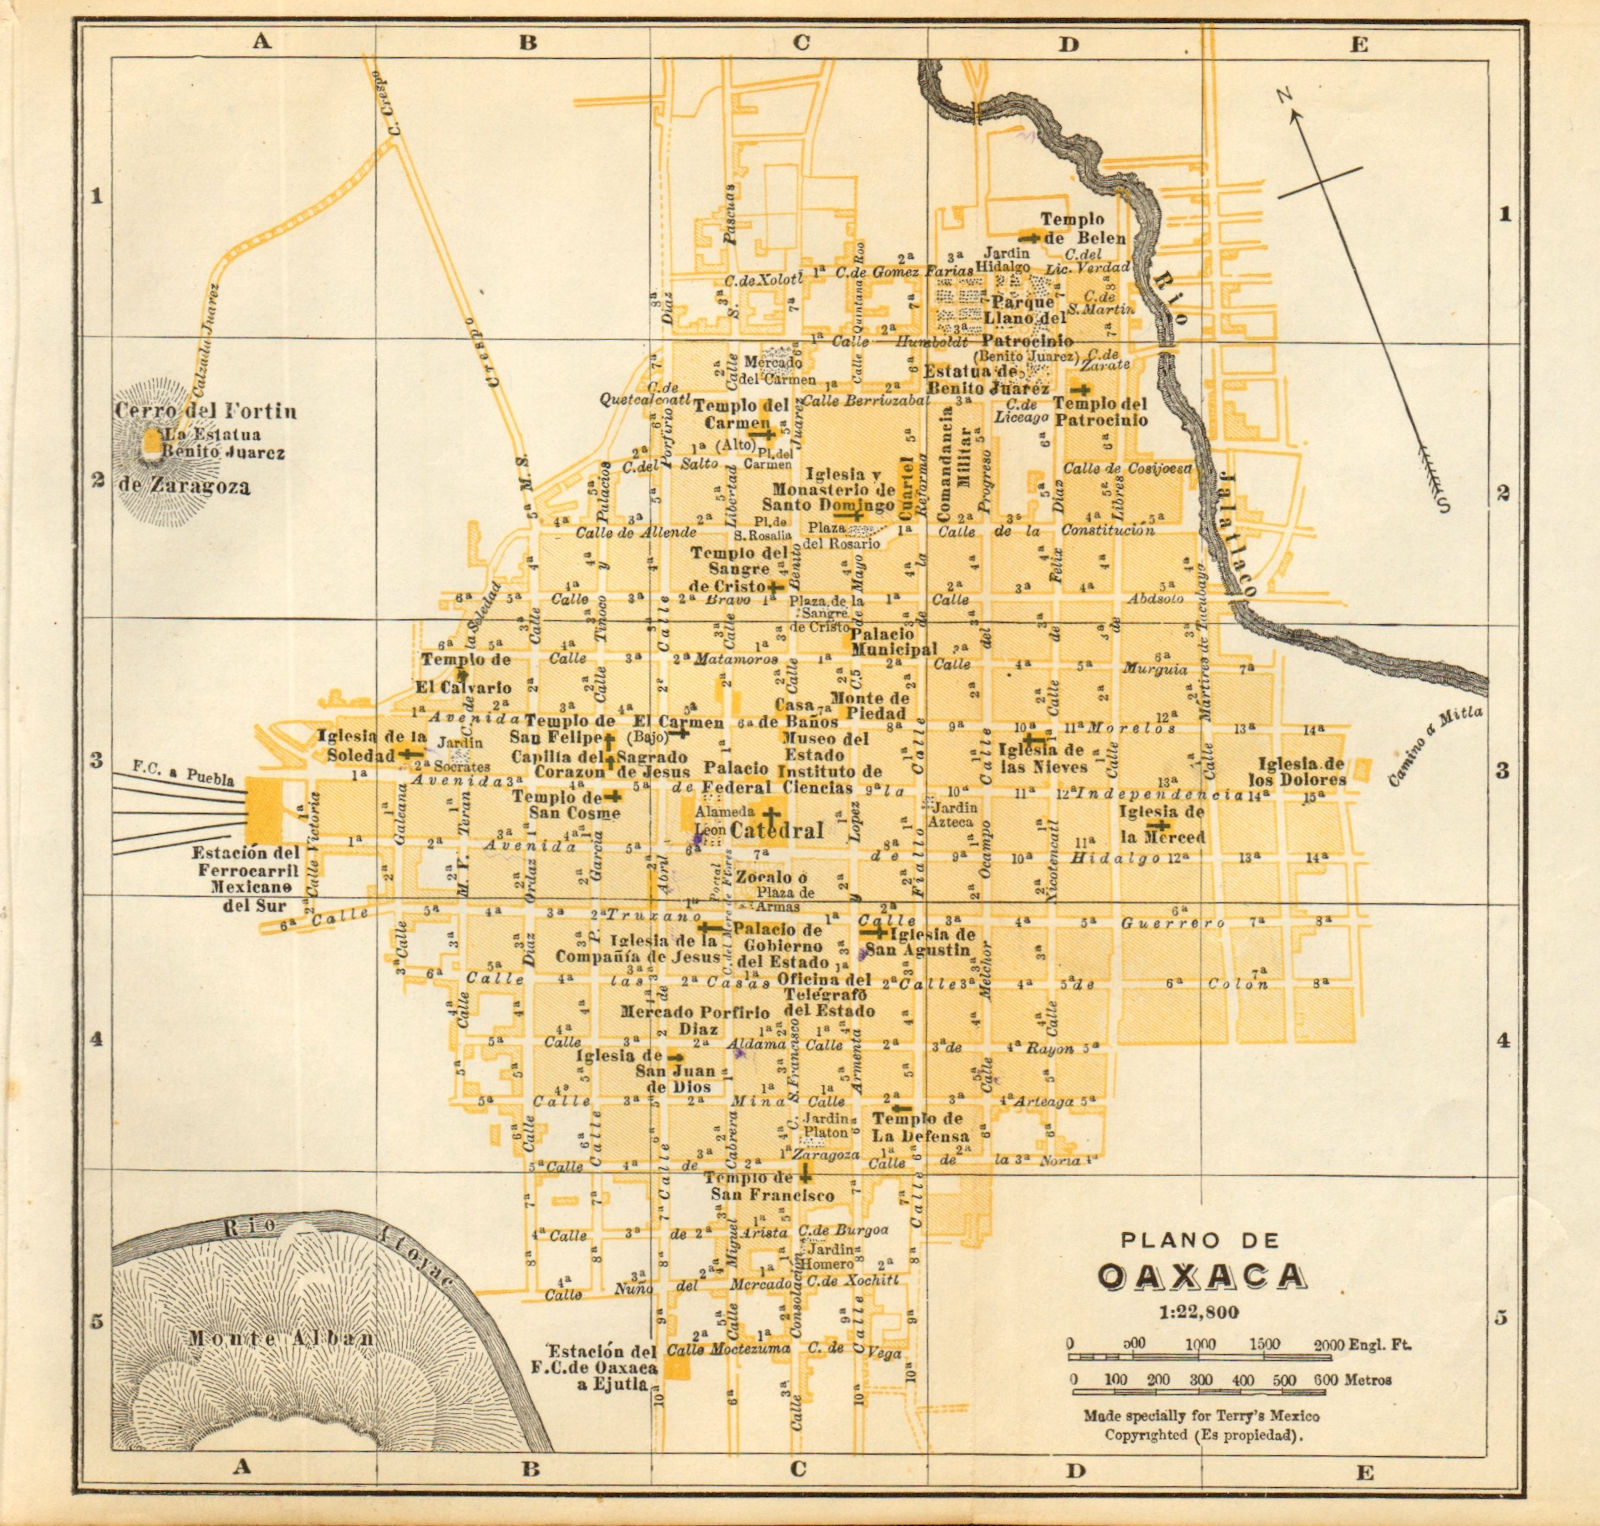 Associate Product Plano de OAXACA, Mexico. Mapa de la ciudad. City/town plan 1935 old